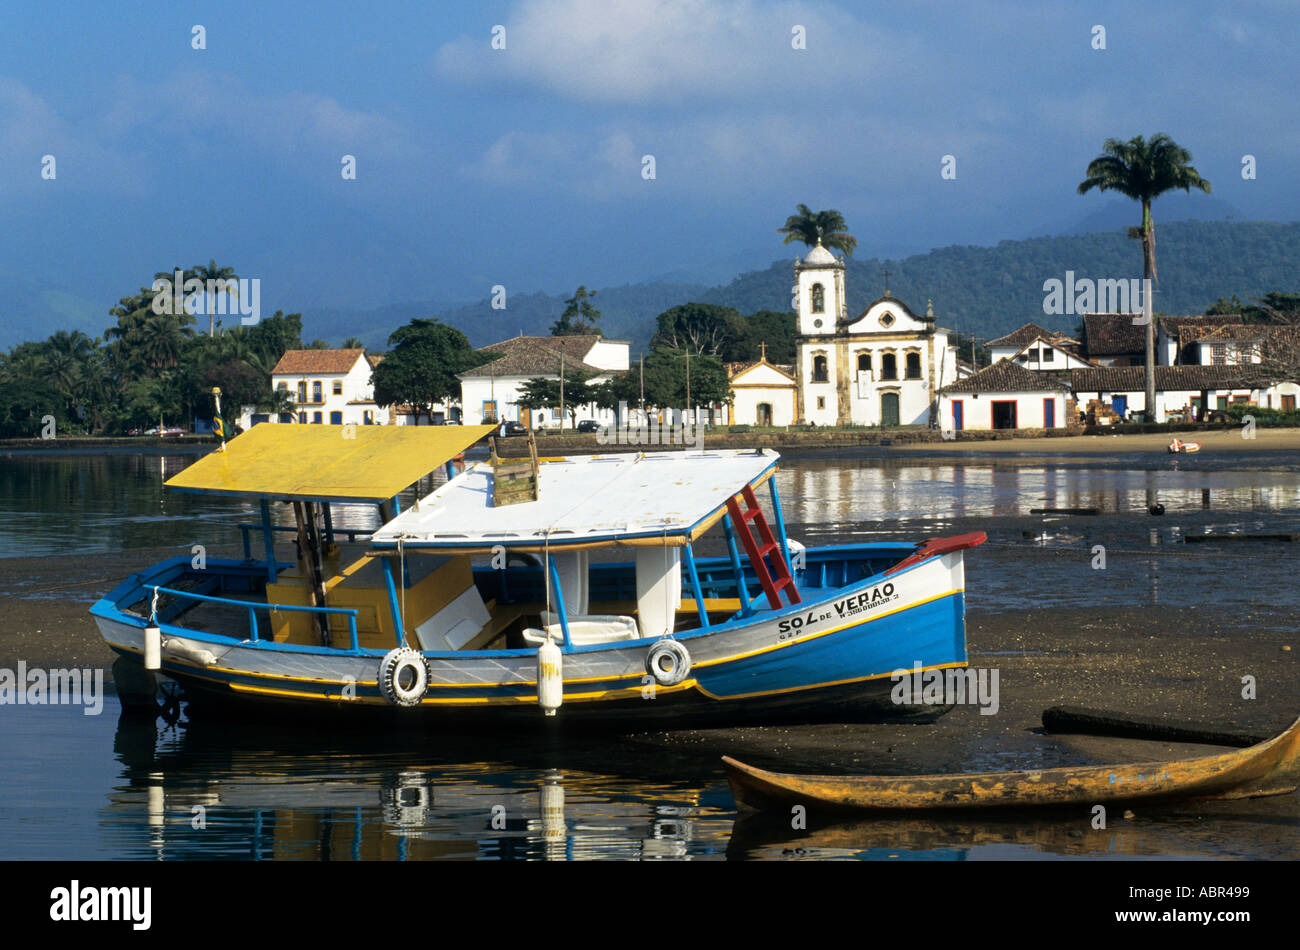 Paraty, Rio de Janeiro, Brésil ; État Sol de Verao bleu, jaune et blanc voile avec l'église coloniale de l'autre côté de la rivière. Banque D'Images